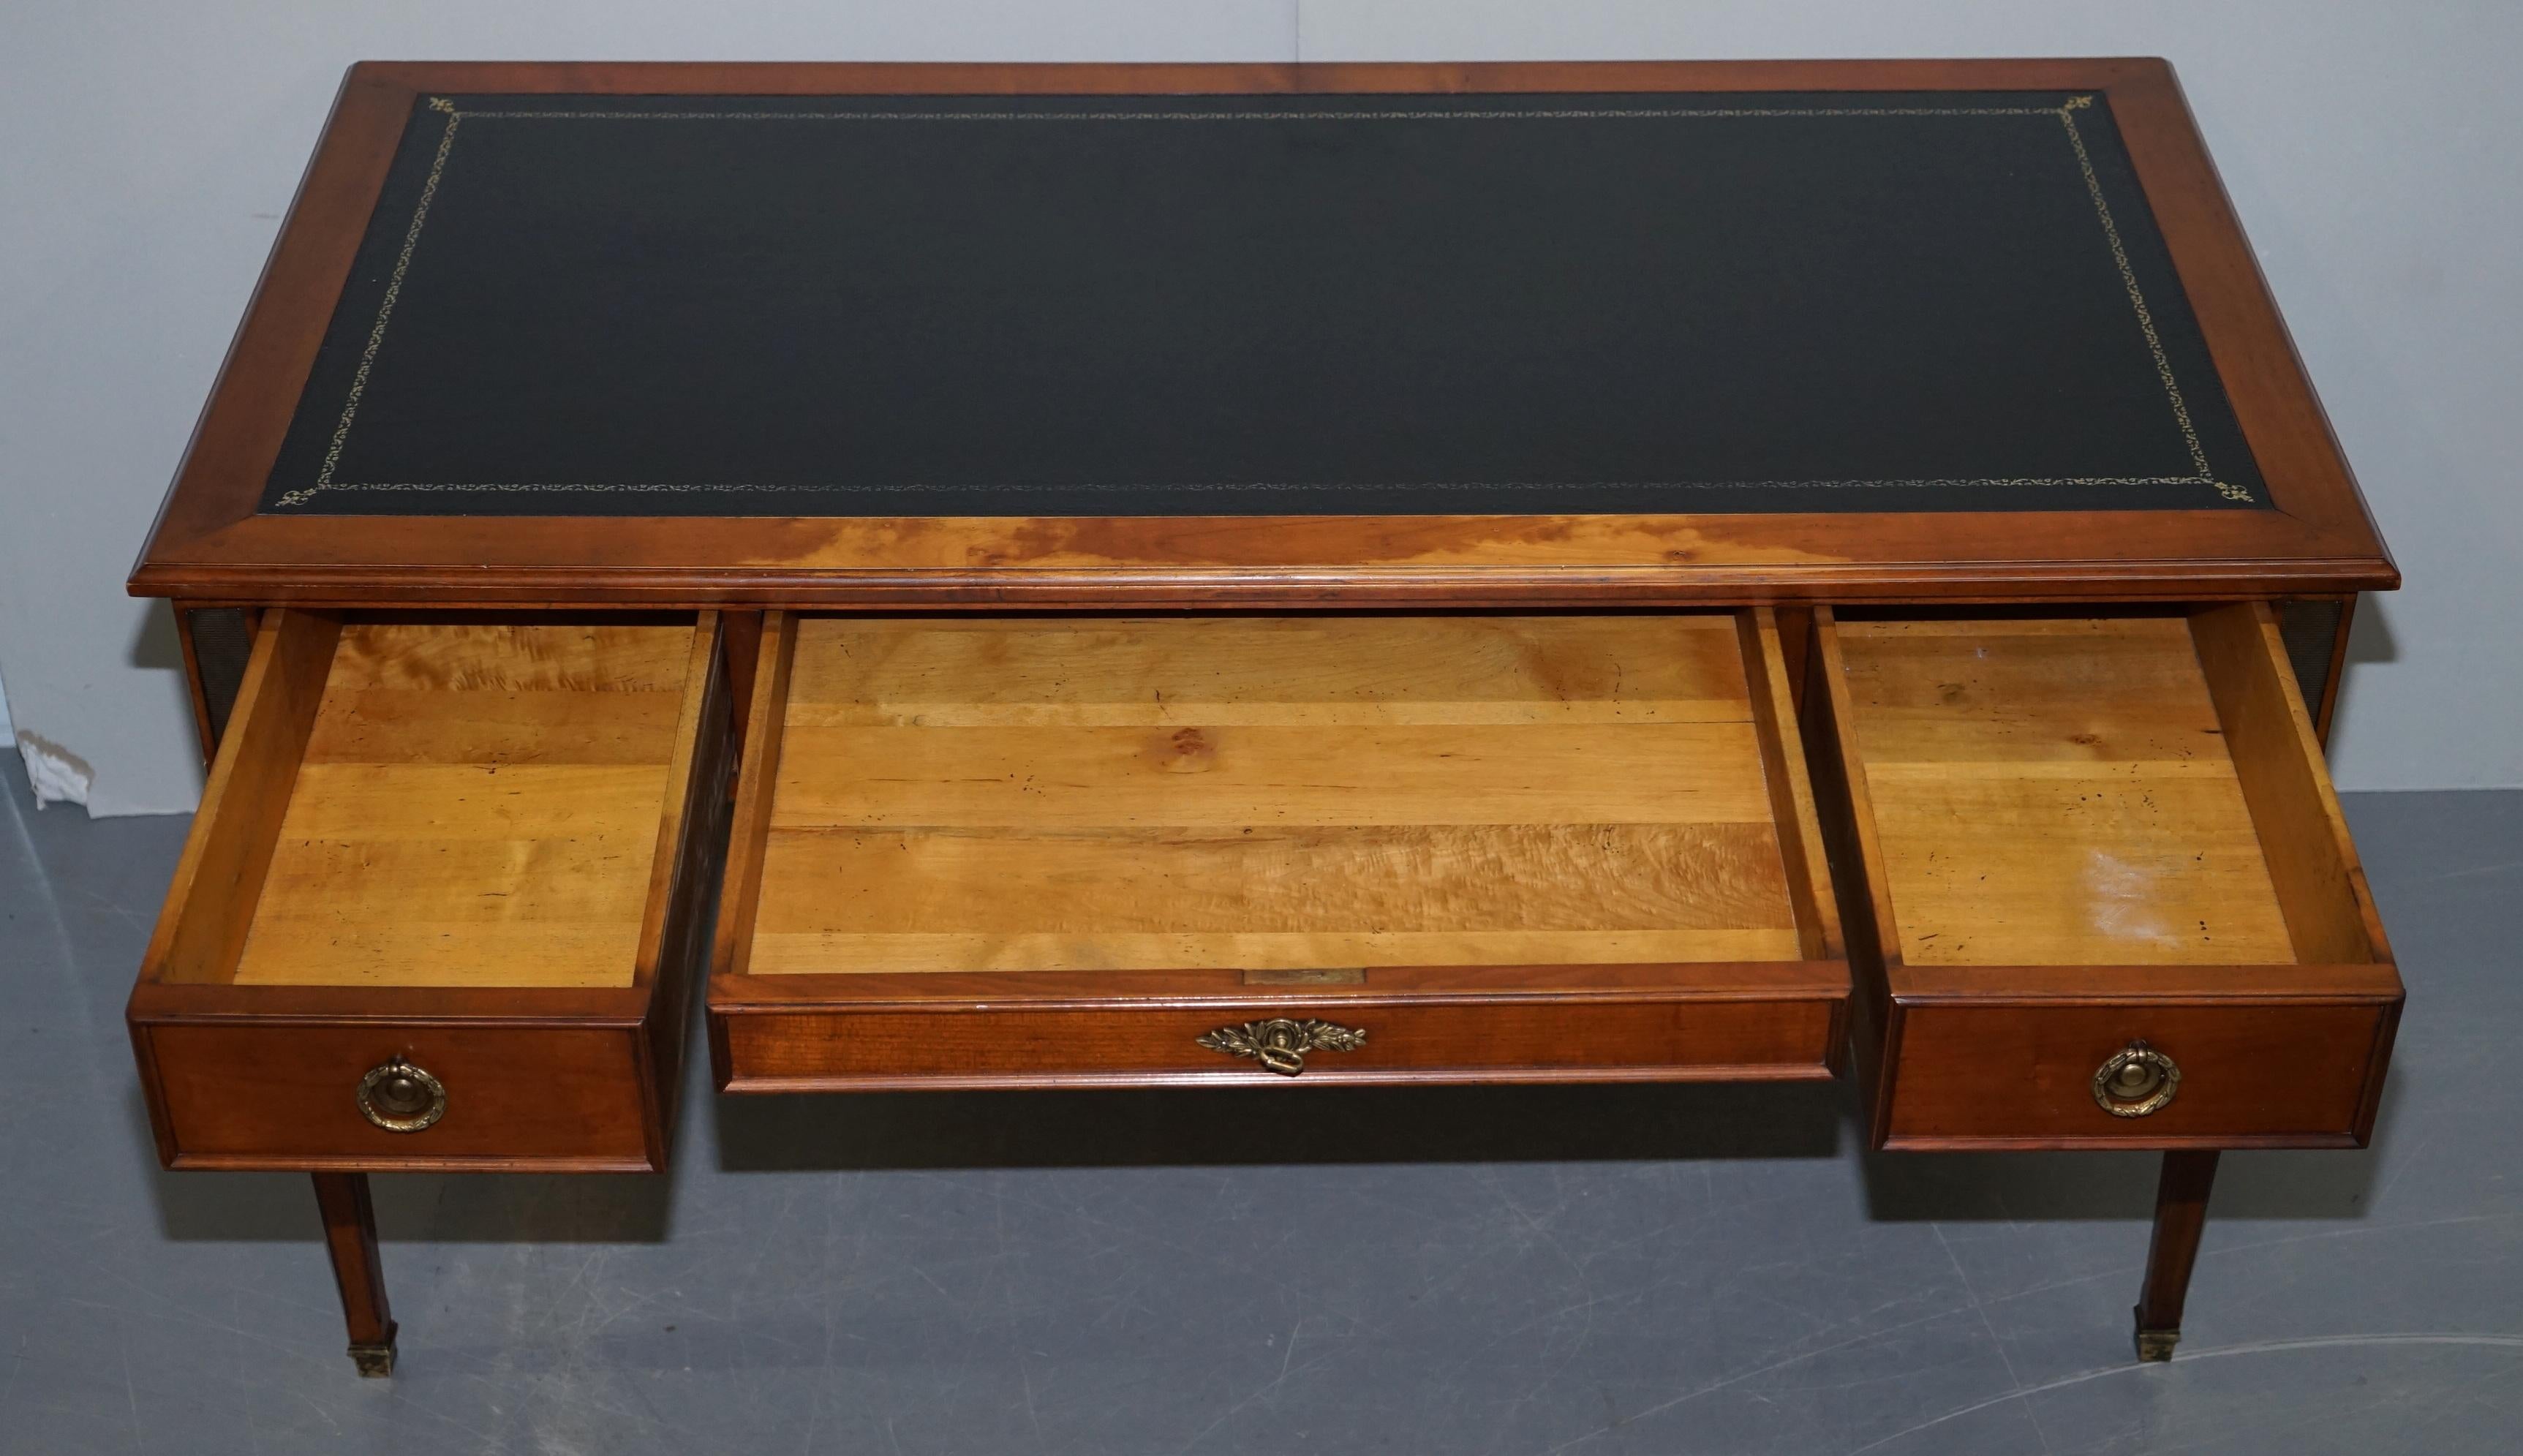 Vintage Fruitwood Leather Topped Extending Bureau De Plat Desk Writing Table 14